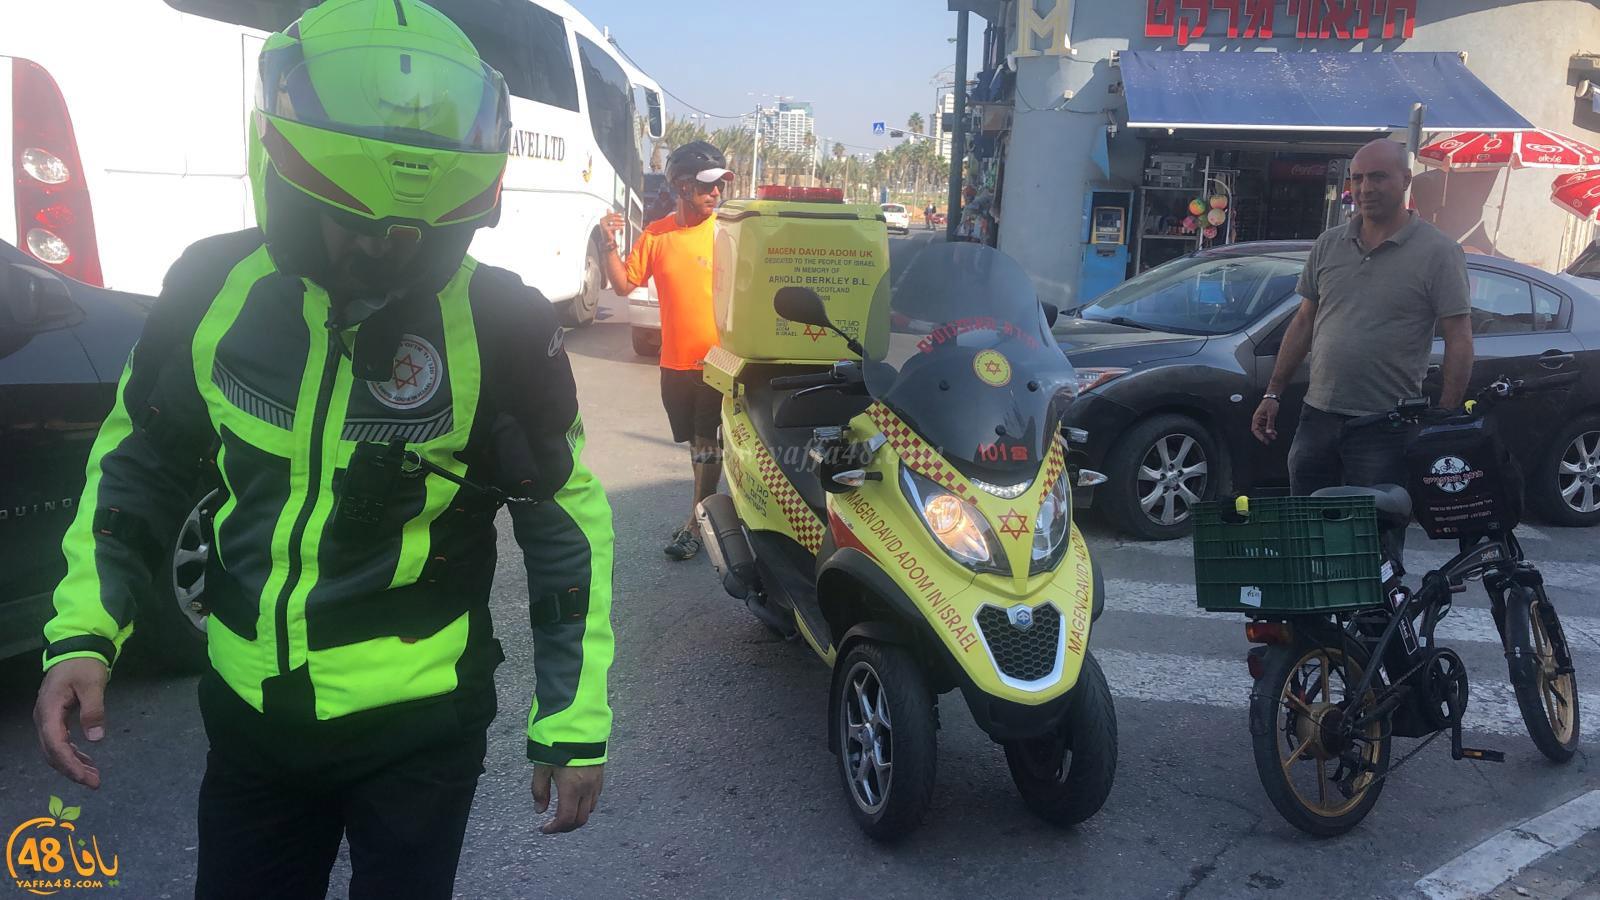  يافا: إصابة طفيفة لراكب دراجة نارية بحادث طرق قرب دوار الساعة